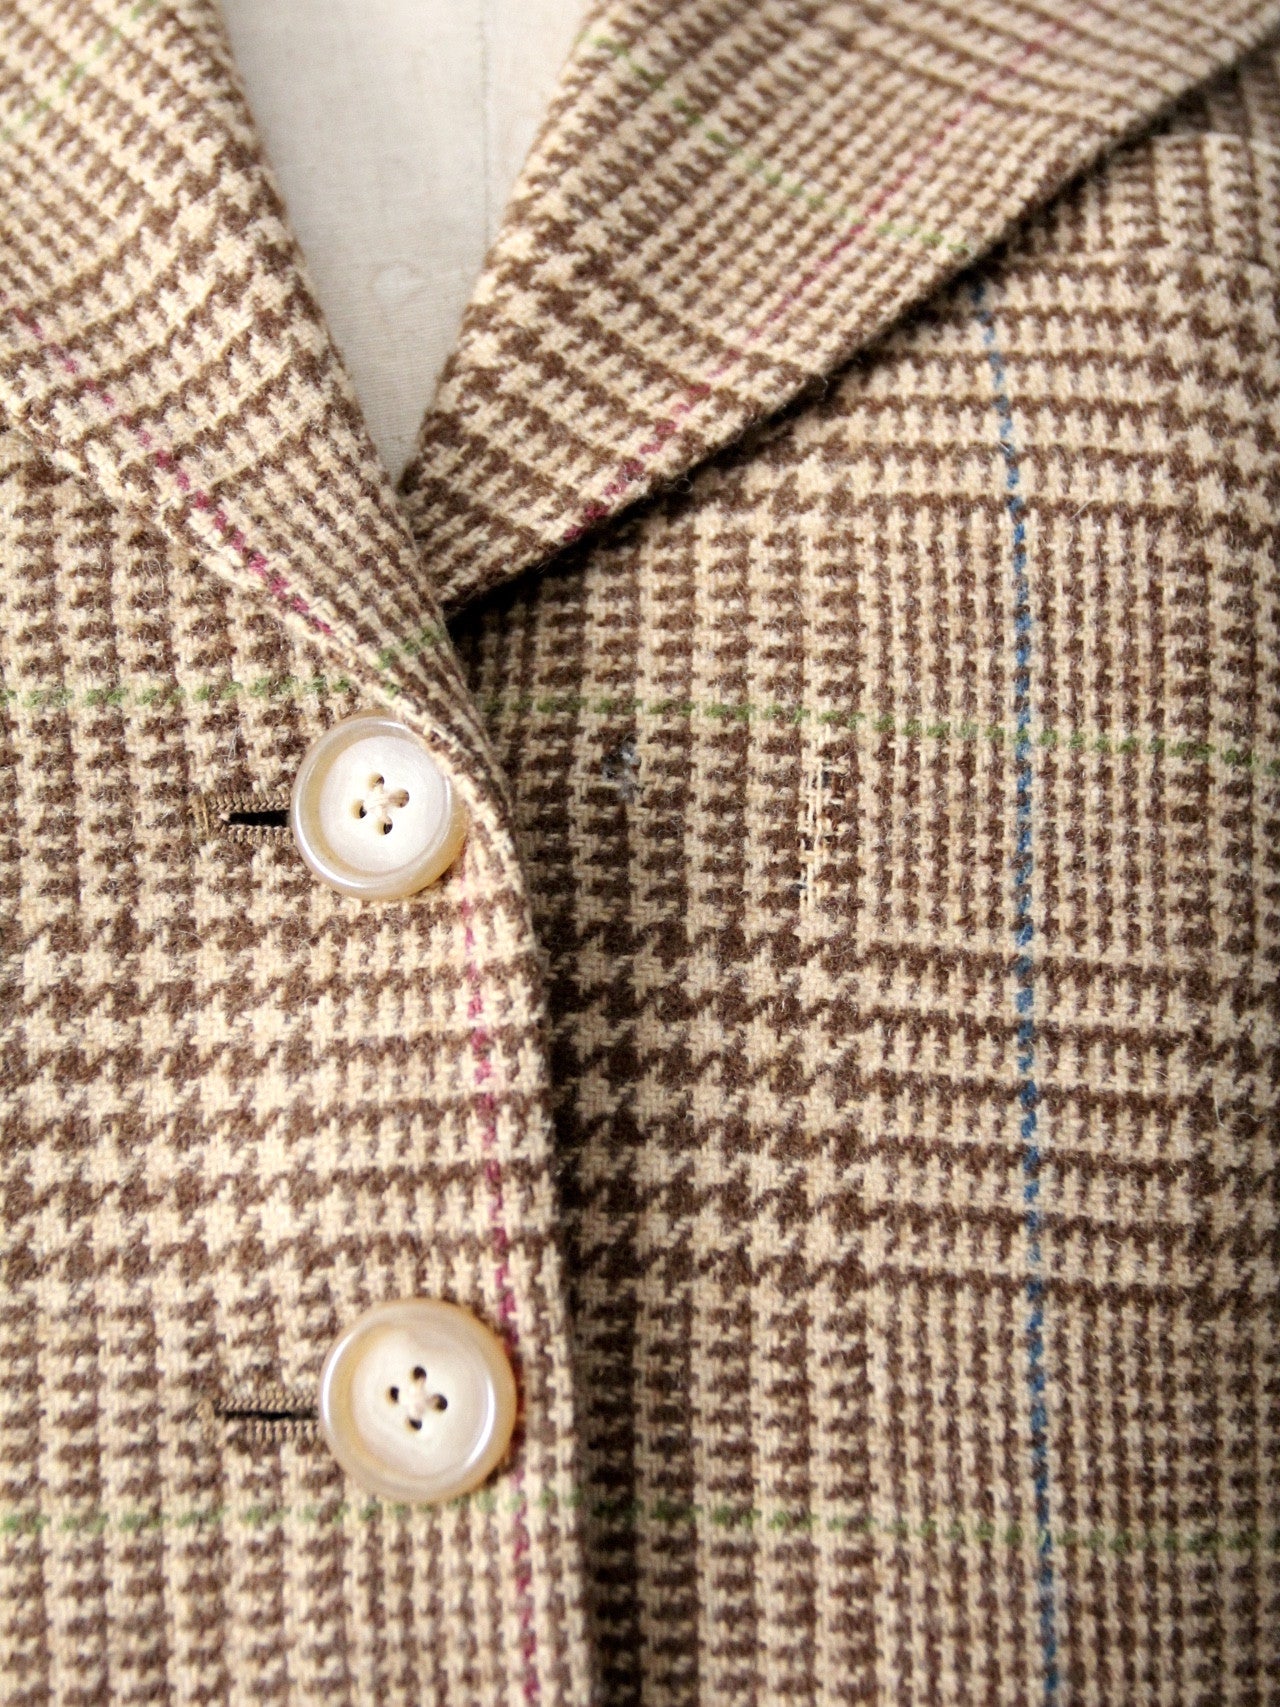 Vintage Lauren Ralph Lauren tweed shoulder bag - Brown/Grey